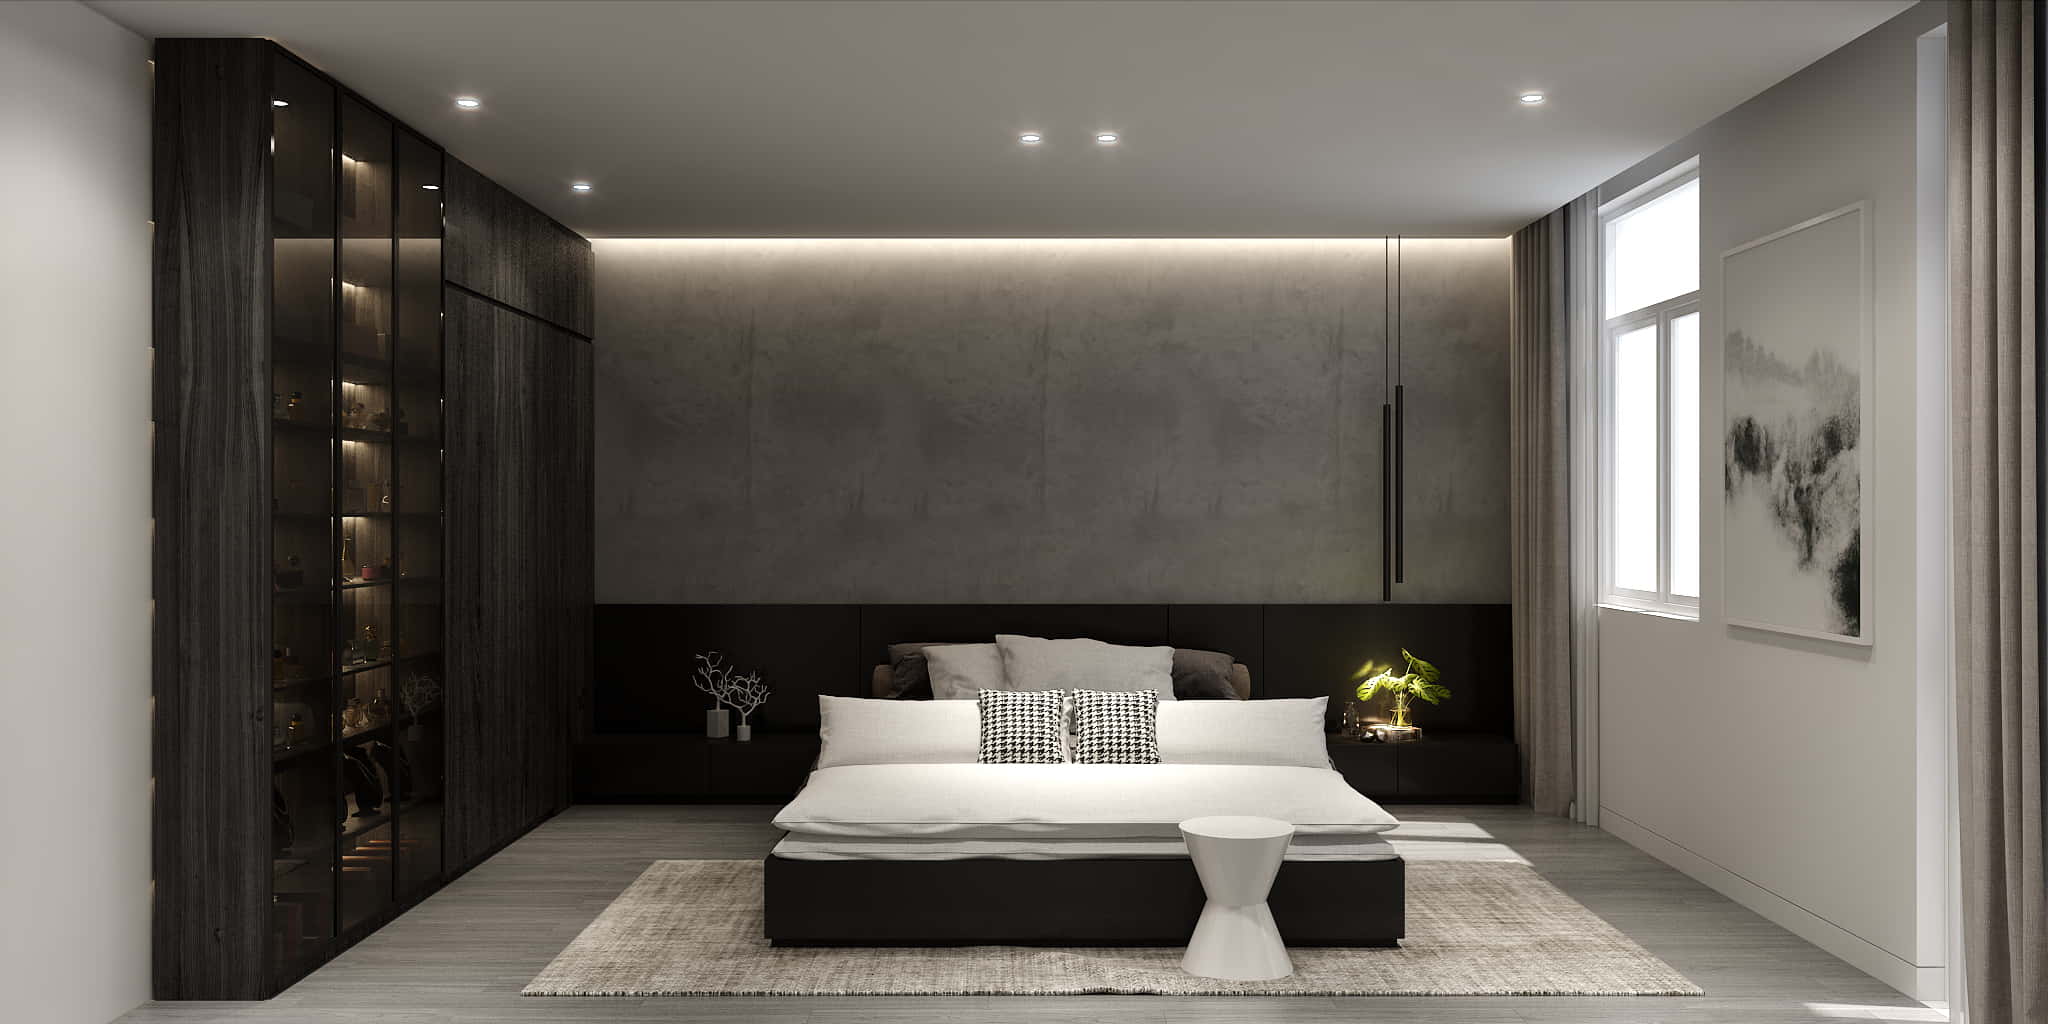 Thiết kế phòng ngủ tối giản đẹp cùng với các gam màu trung tính và họa tiết đơn giản đang trở thành xu hướng và ngày càng thịnh hành